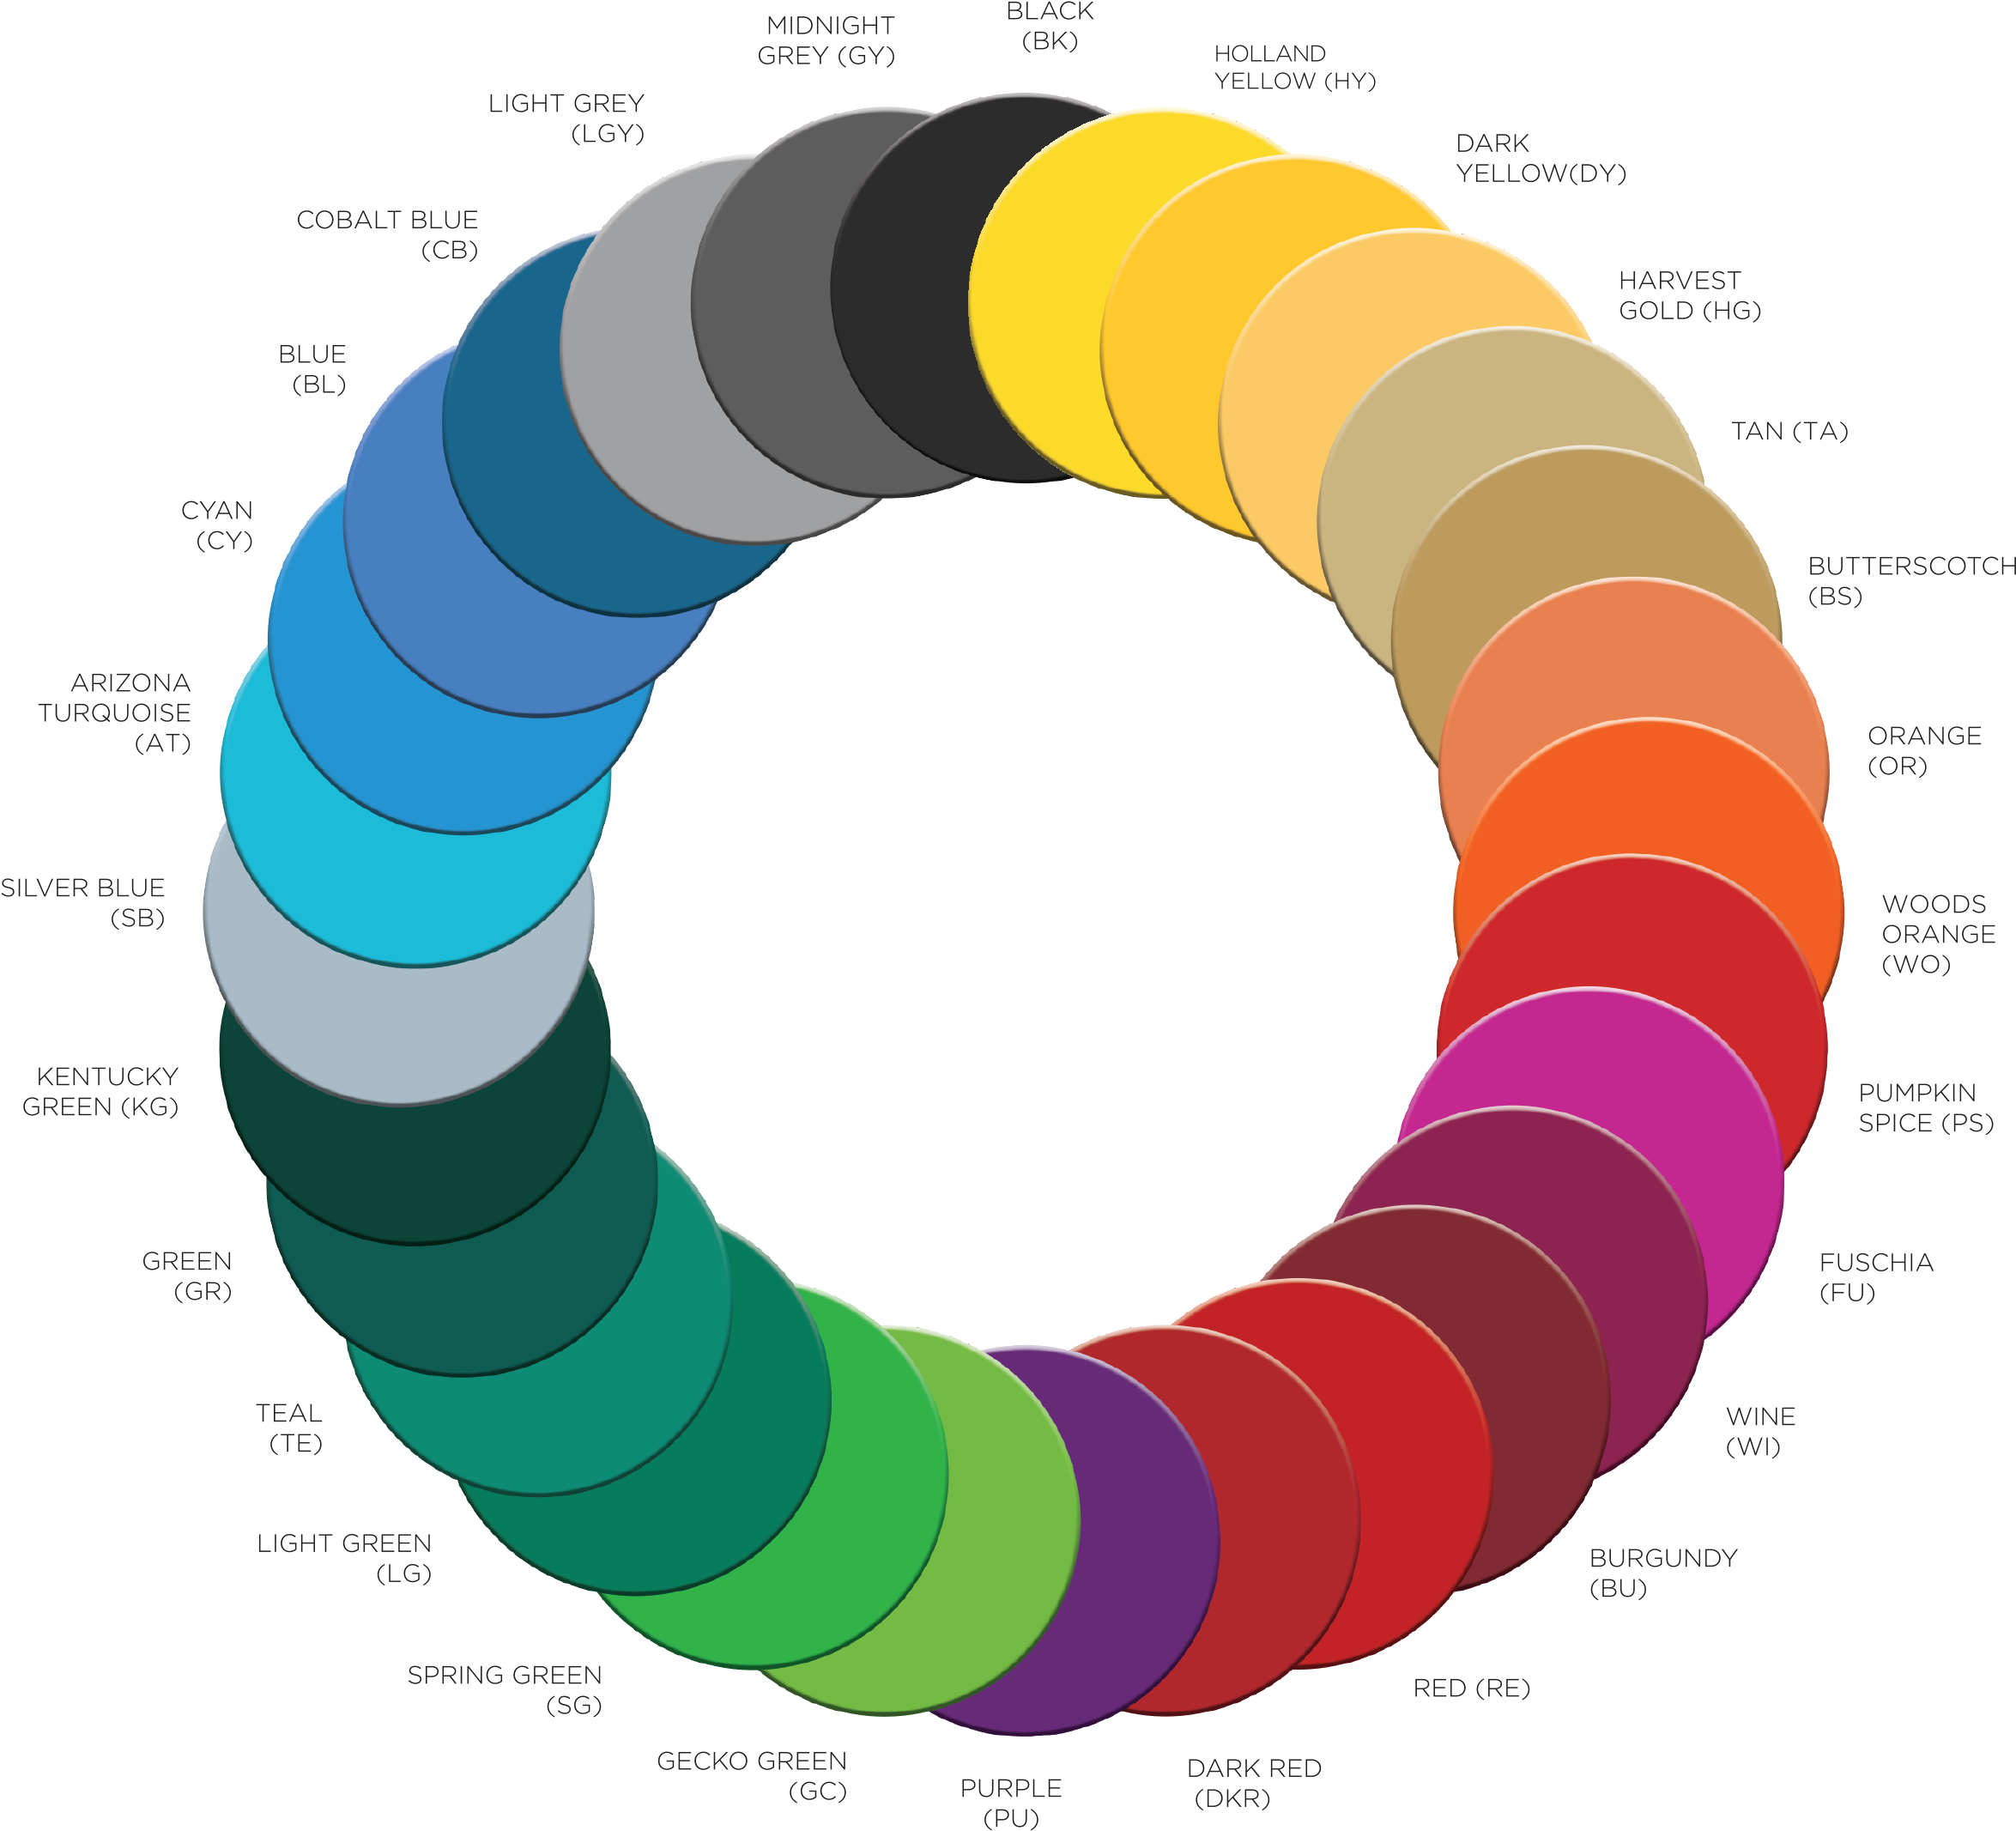 A Circular Arrangement Of Different Colors